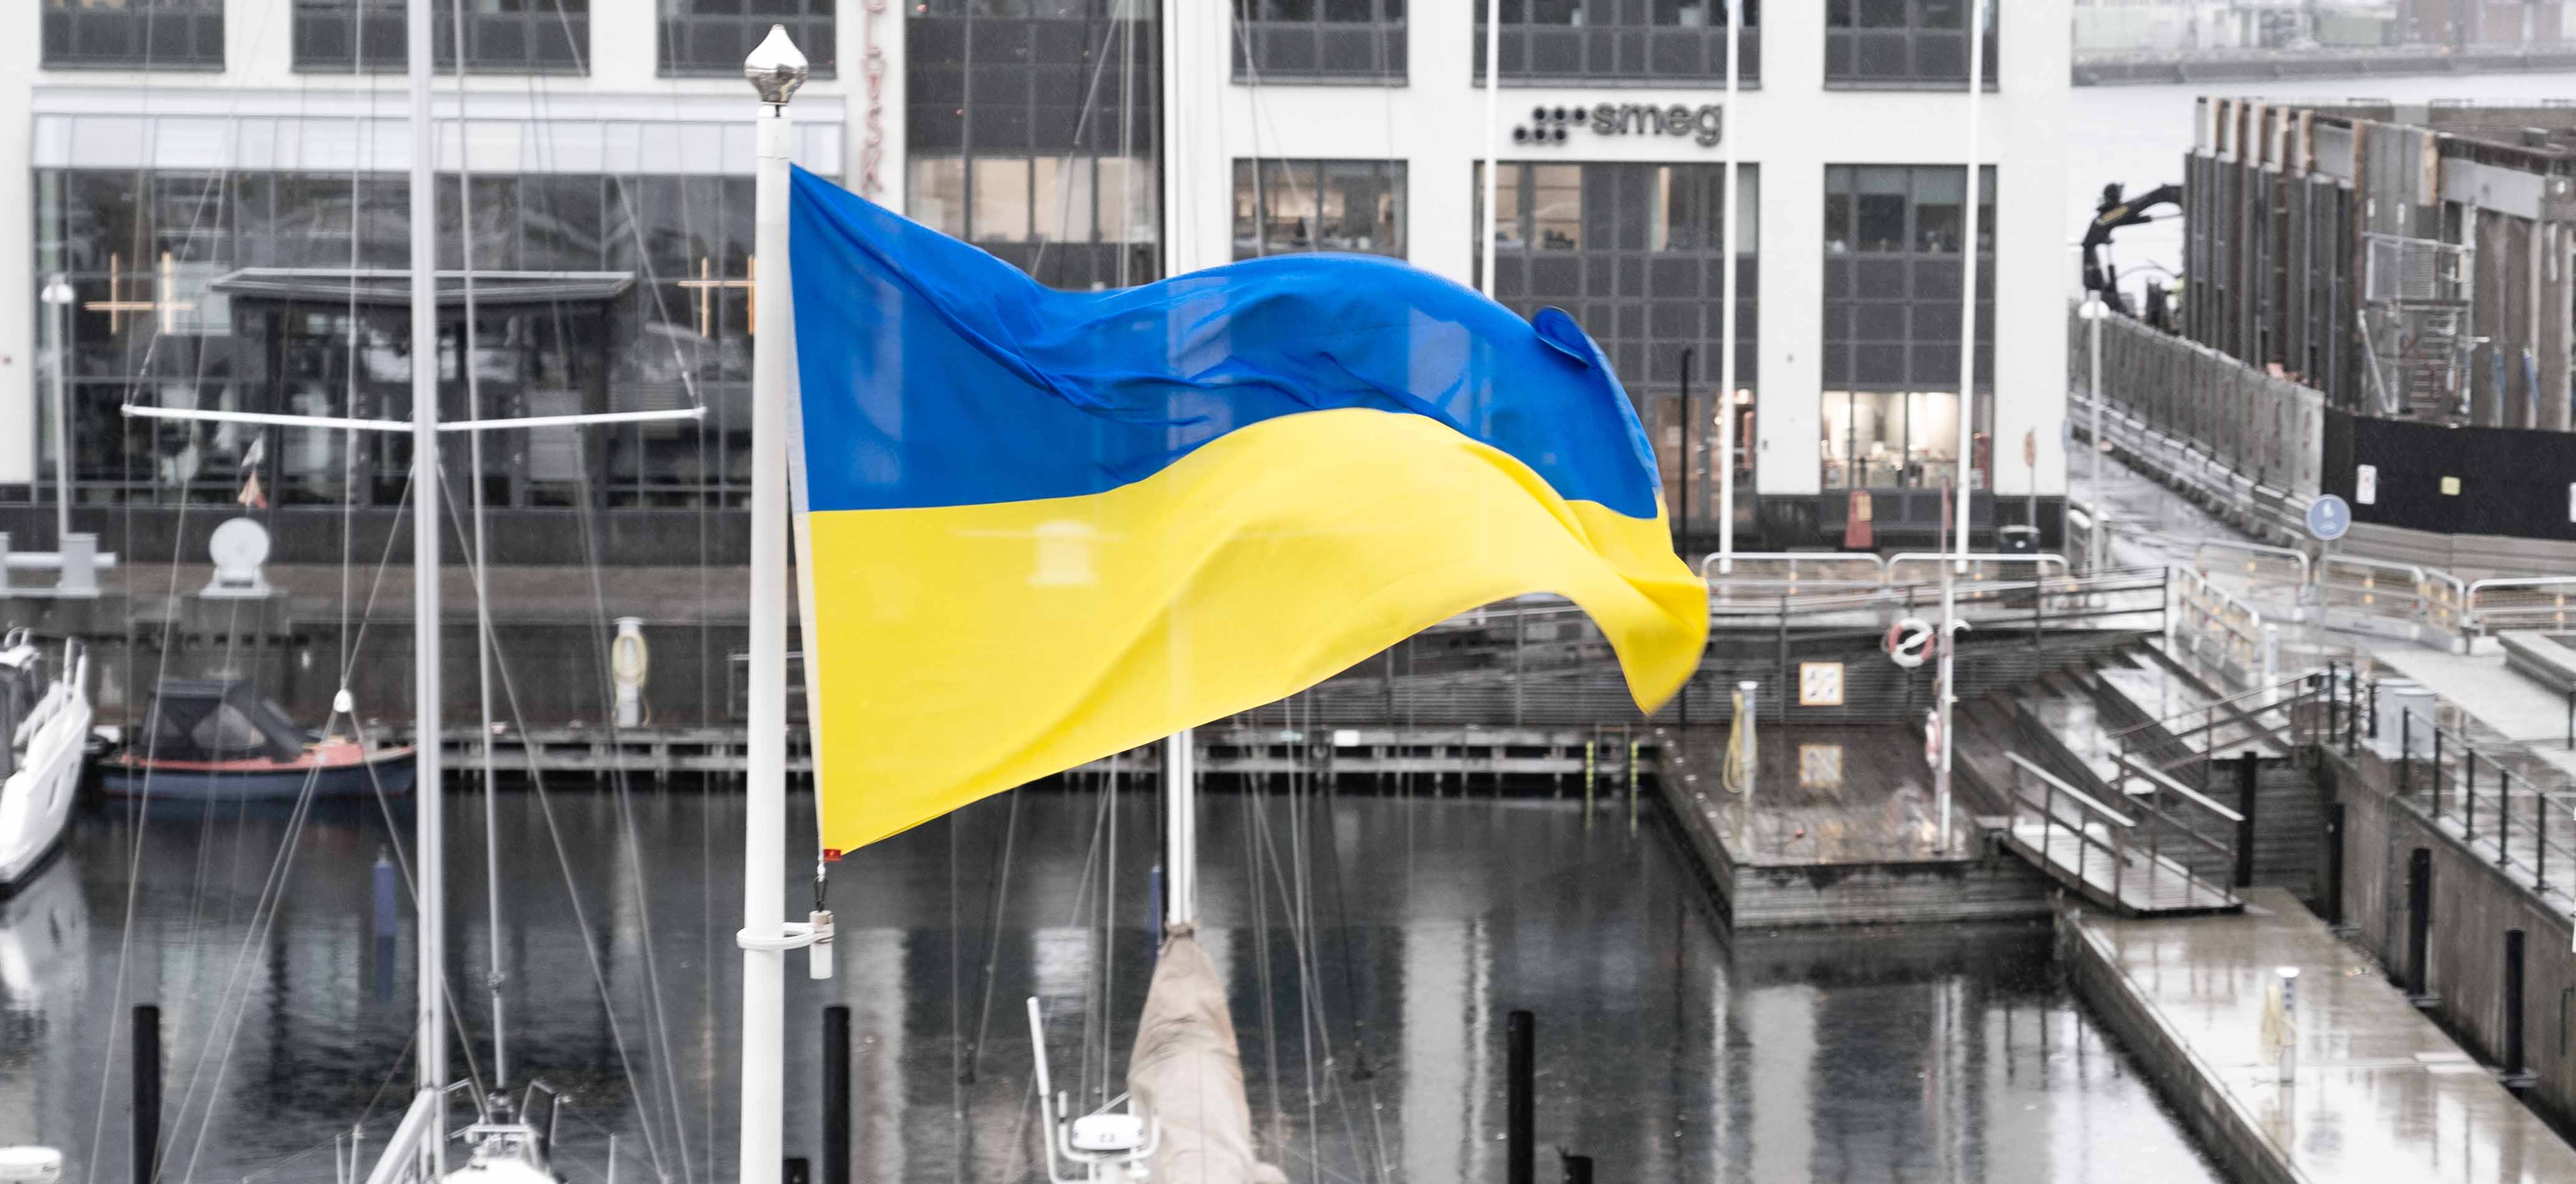 Ukrainska flaggan som vajar på en flaggstång